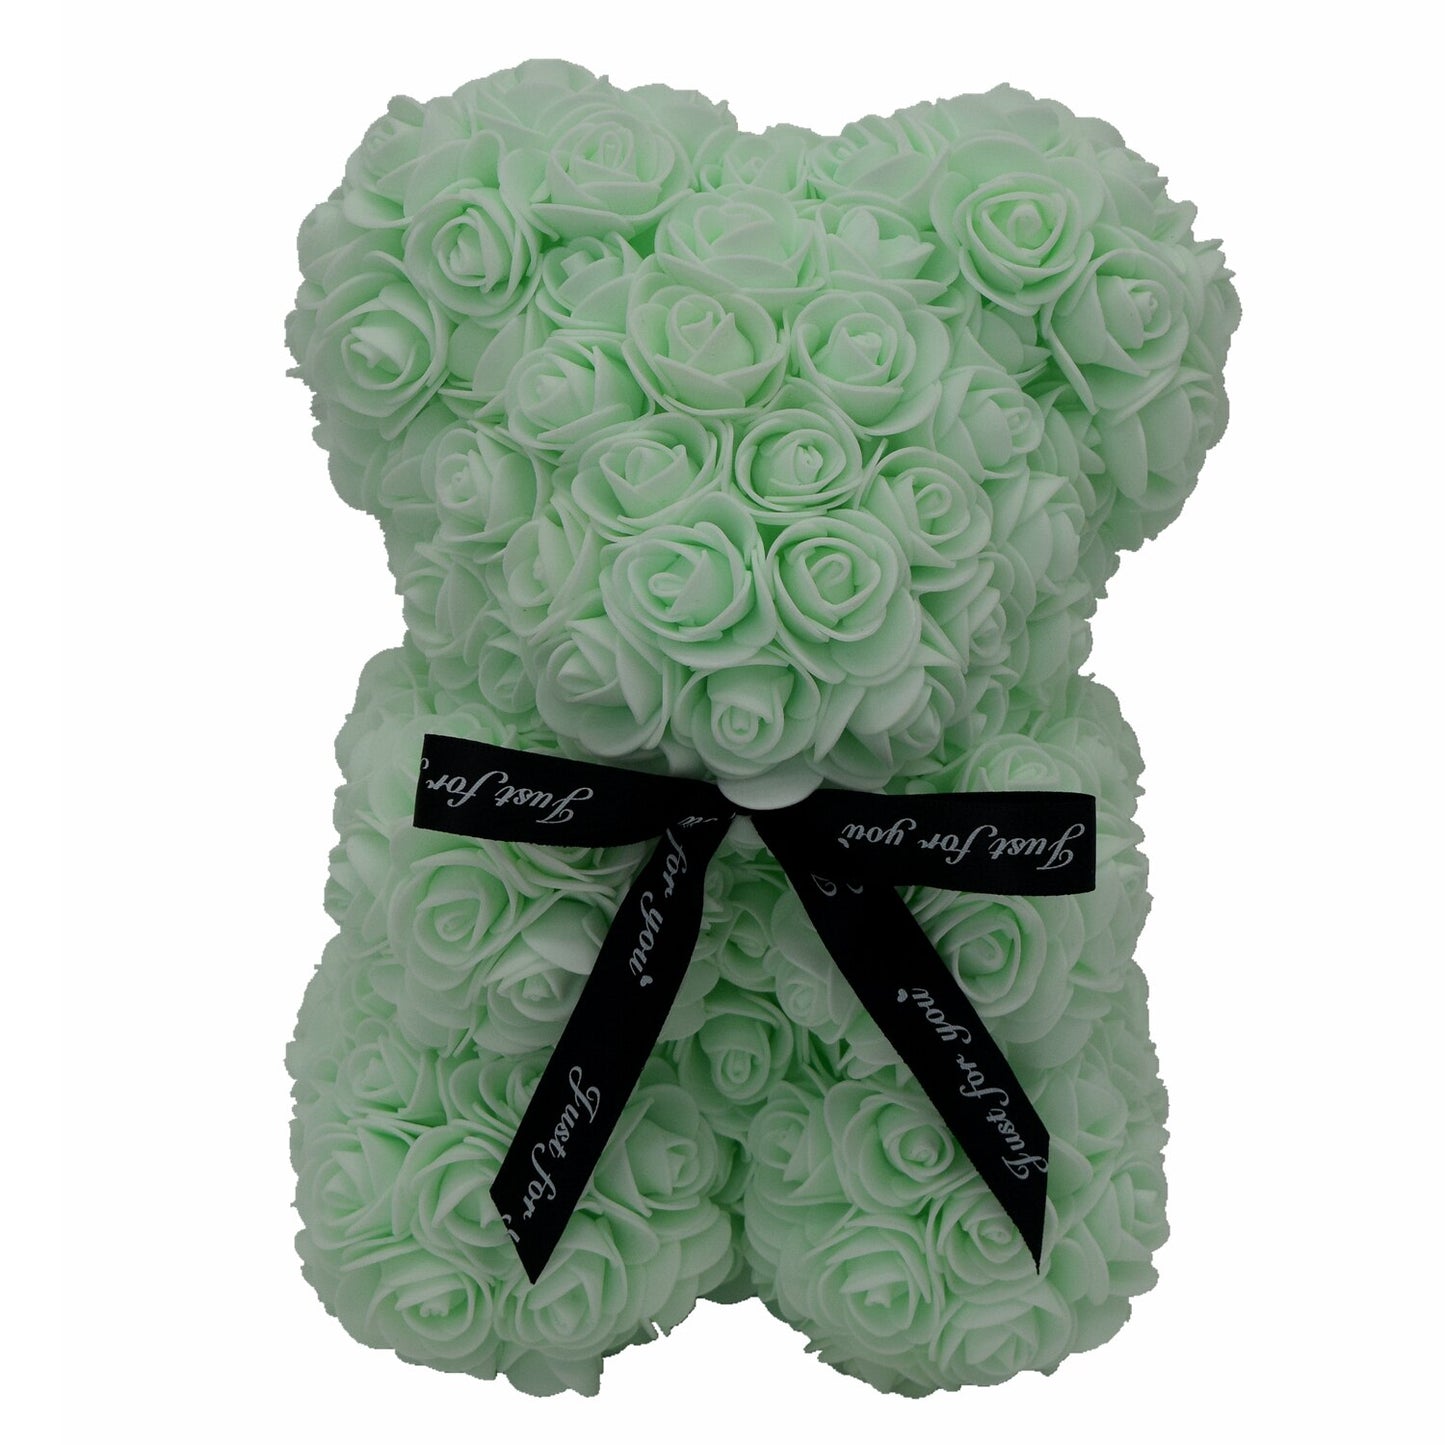 Rose Bear Artificial PE Foam Flower Teddy